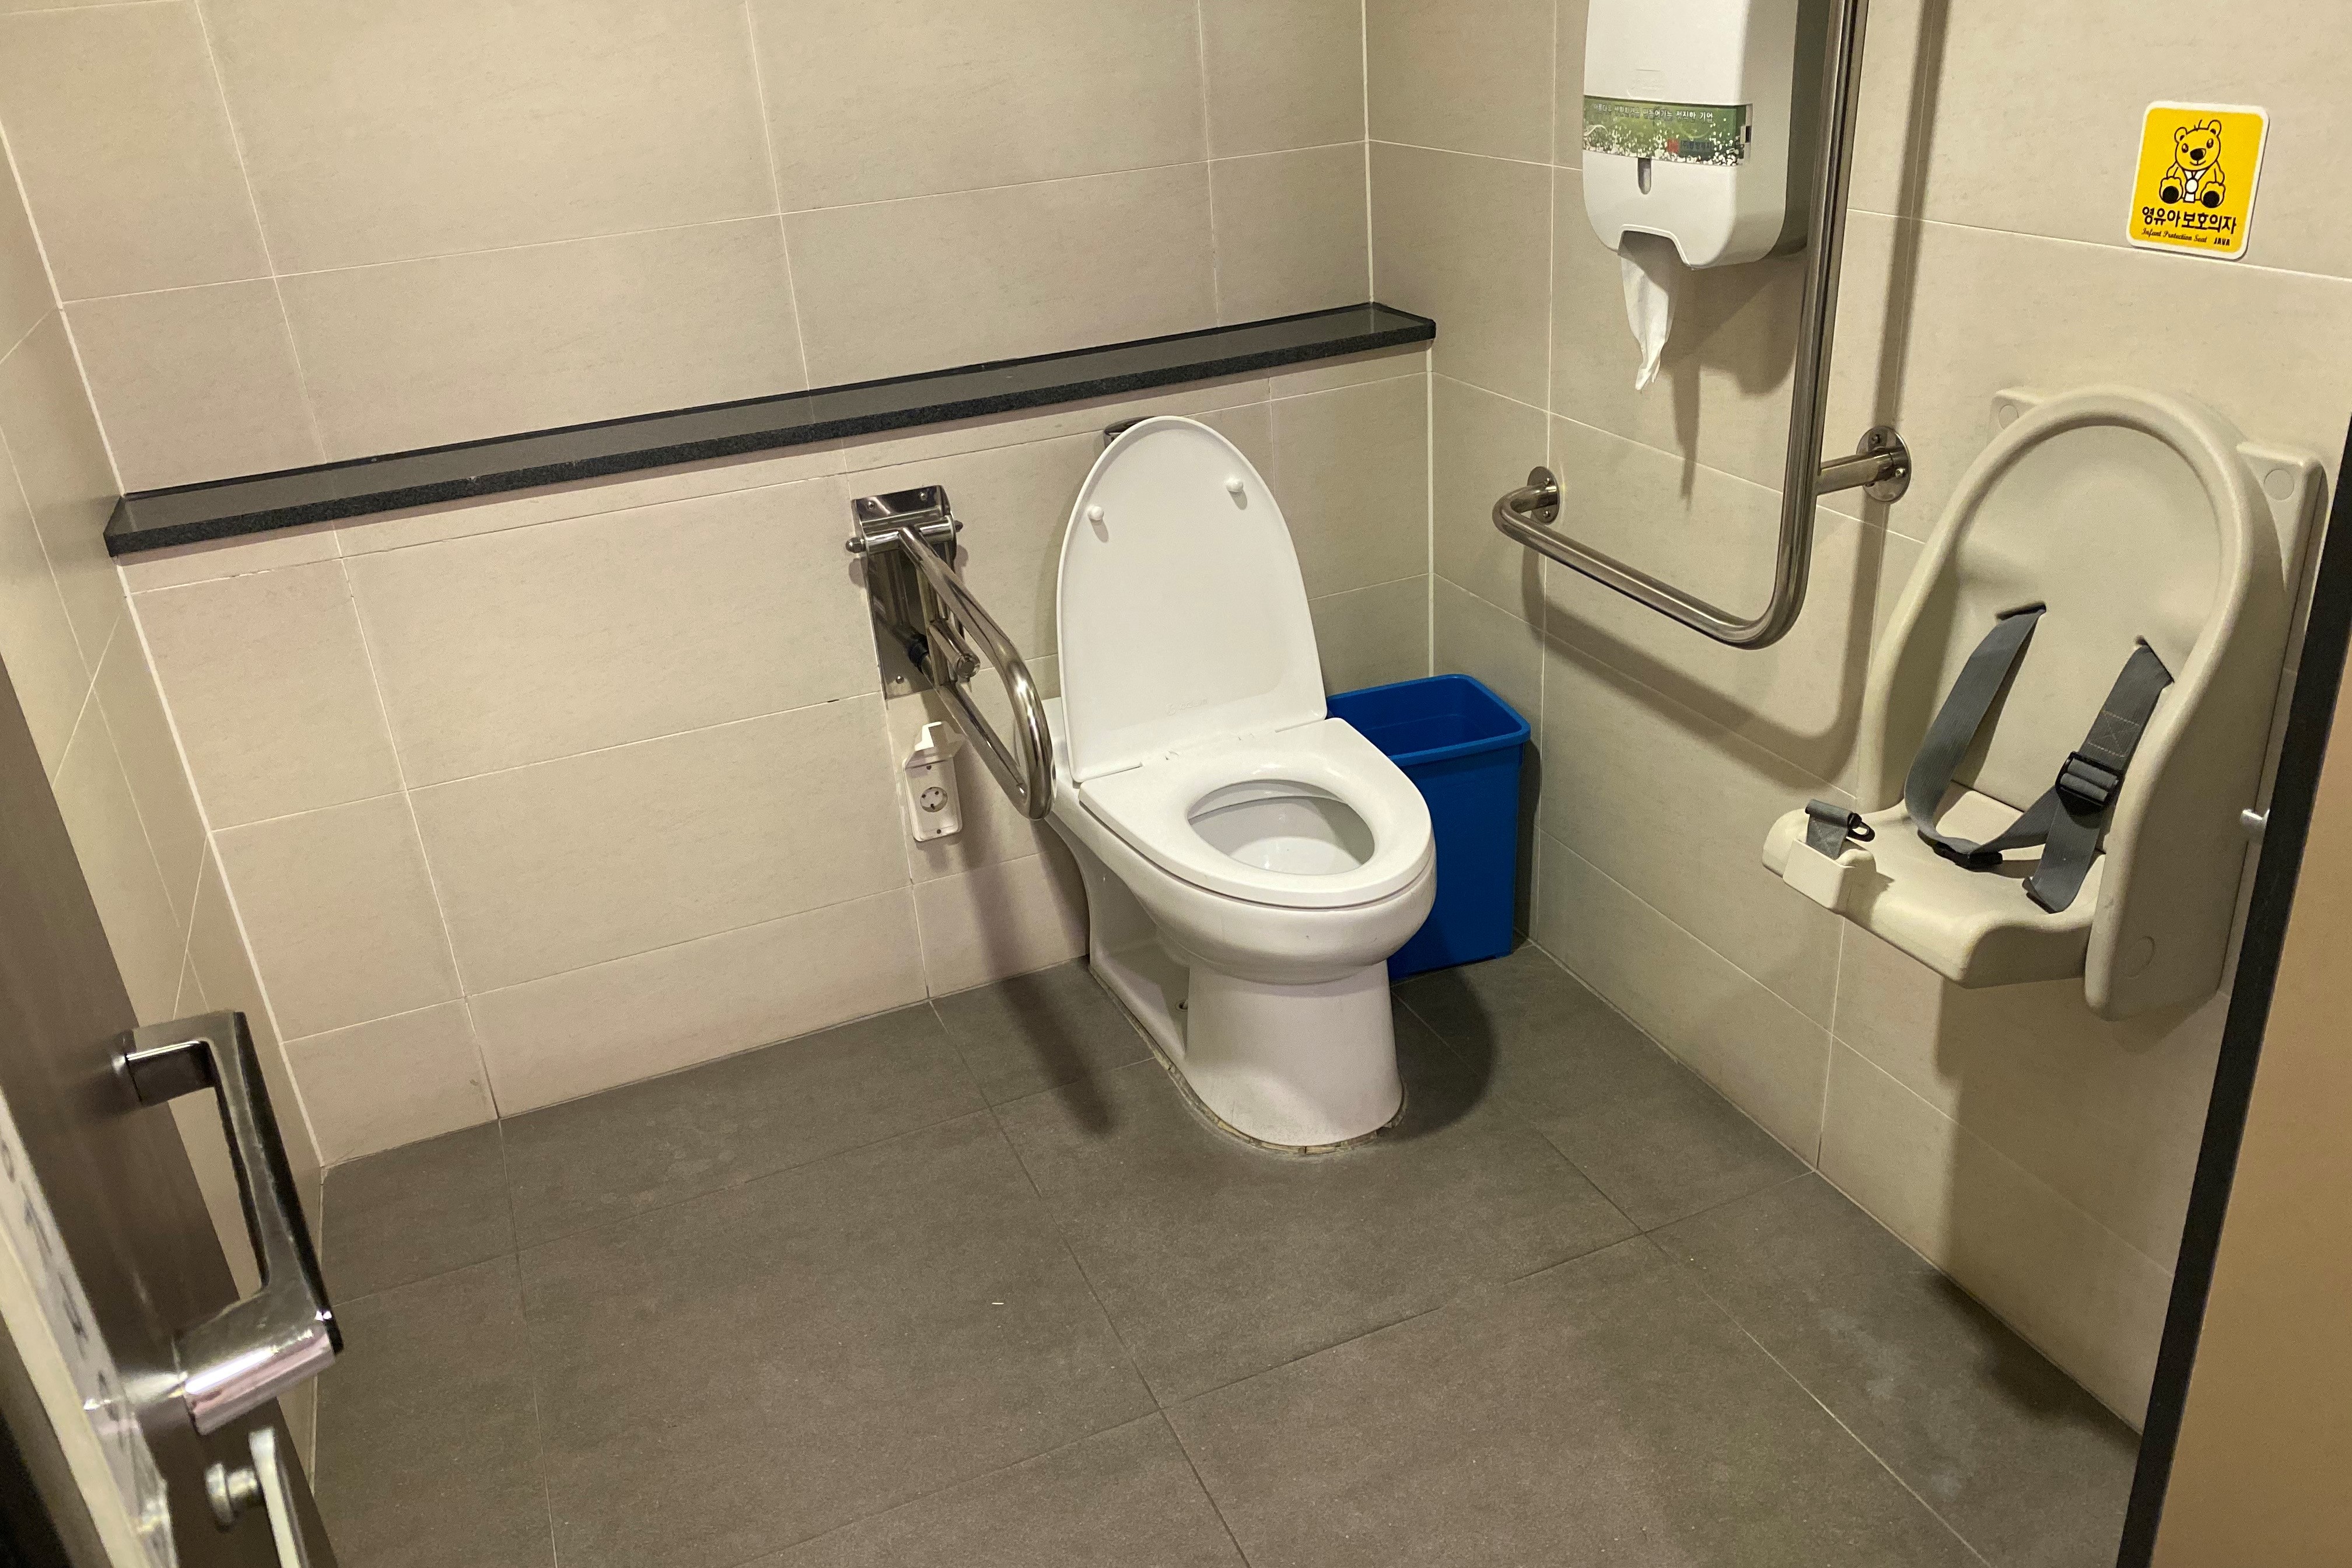 장애인화장실0 : 휠체어 사용자도 안전하게 이용 가능한 넓은 장애인 화장실1